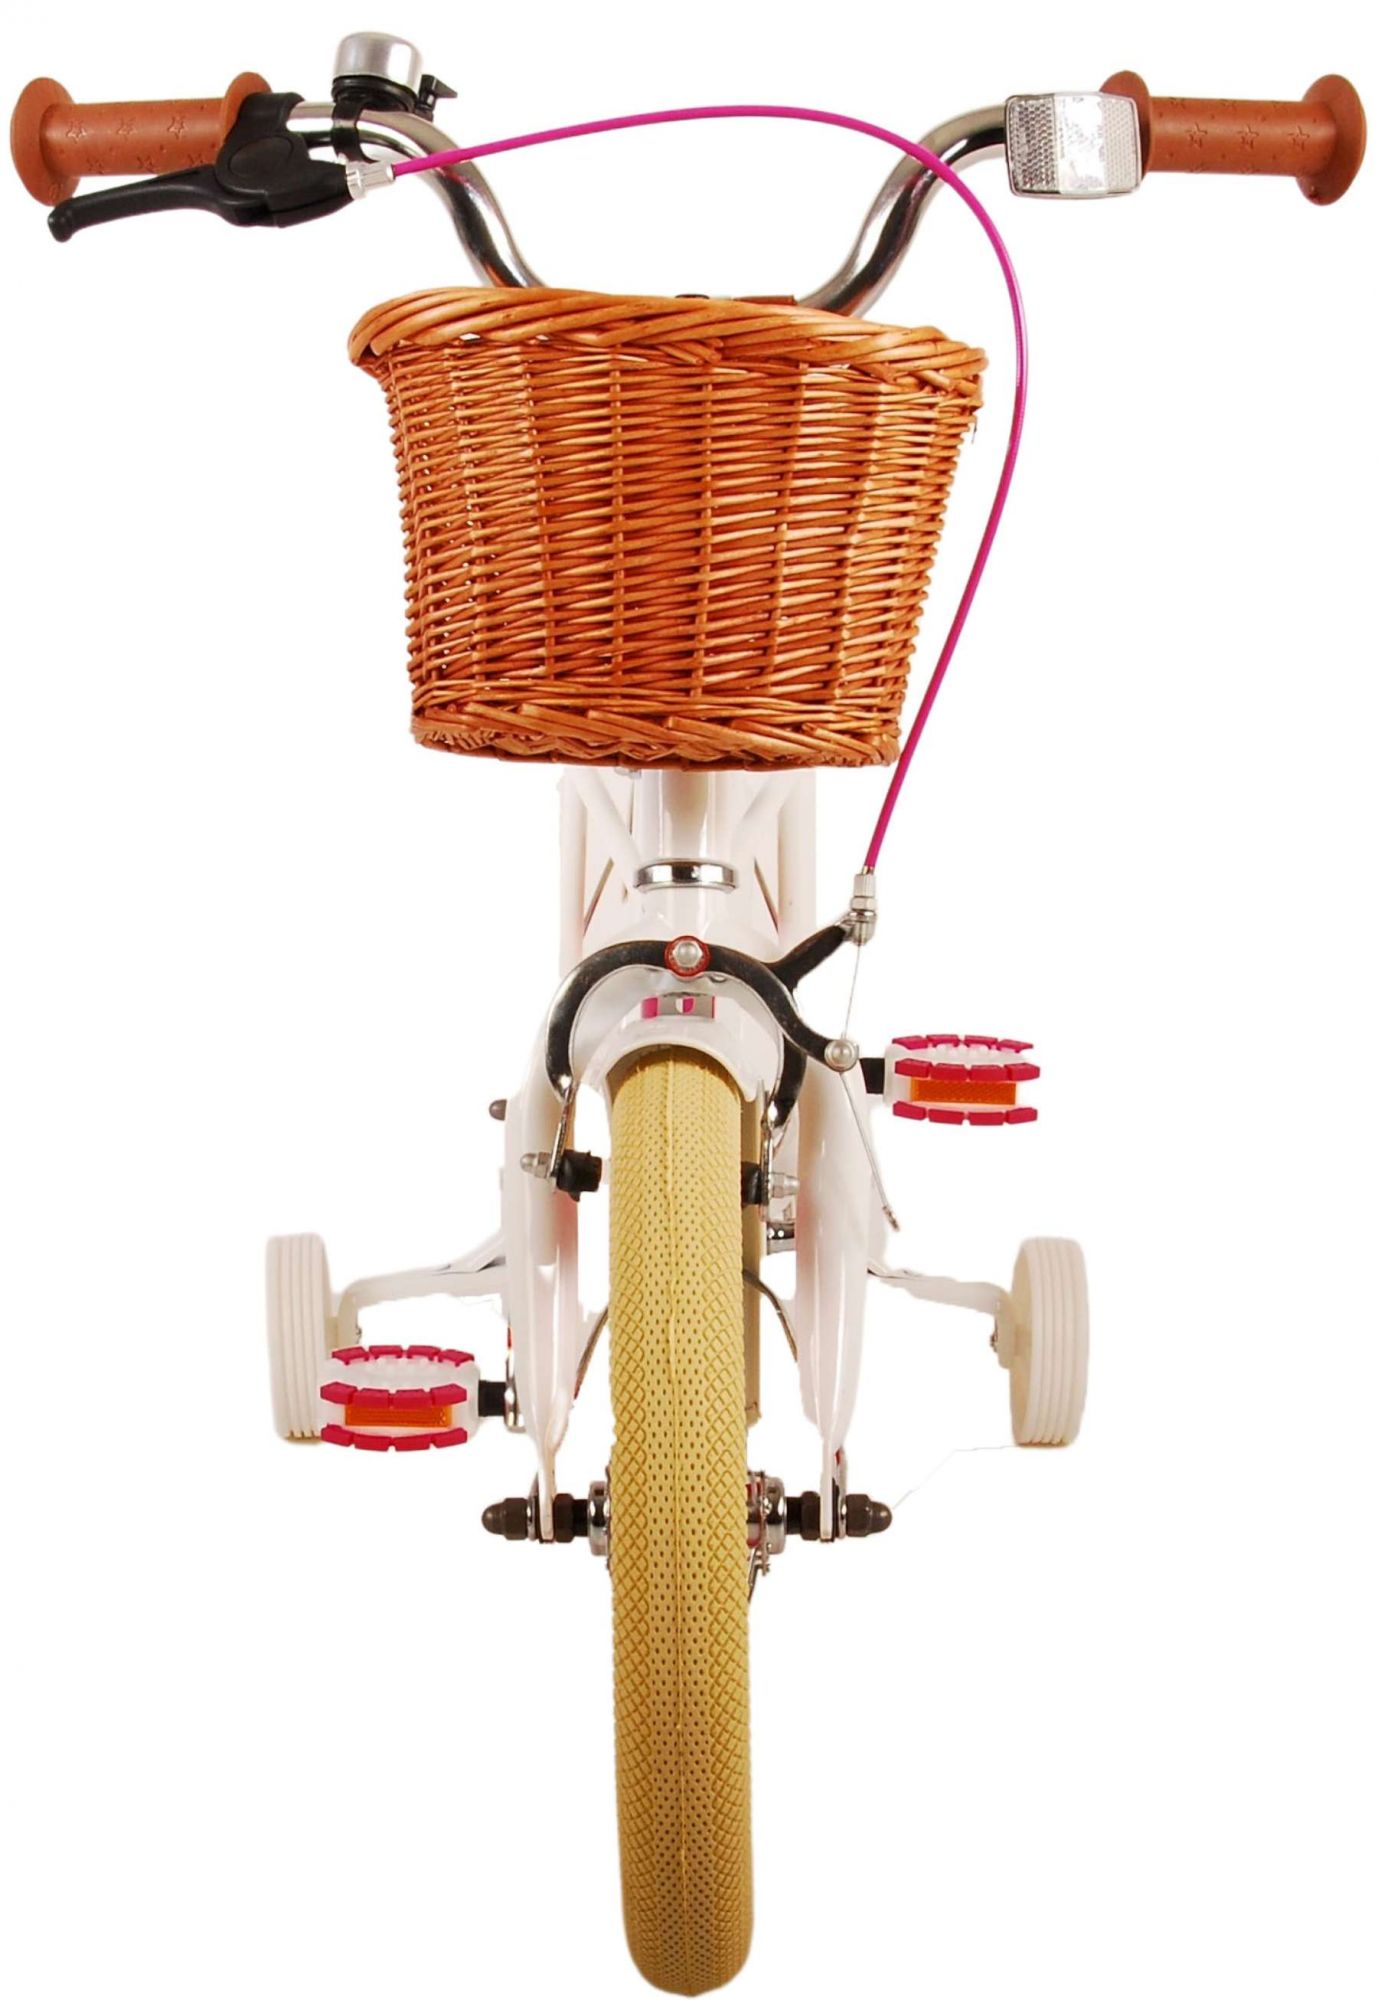 Kinderfahrrad Excellent für Mädchen 14 Zoll Kinderrad in Weiß Fahrrad